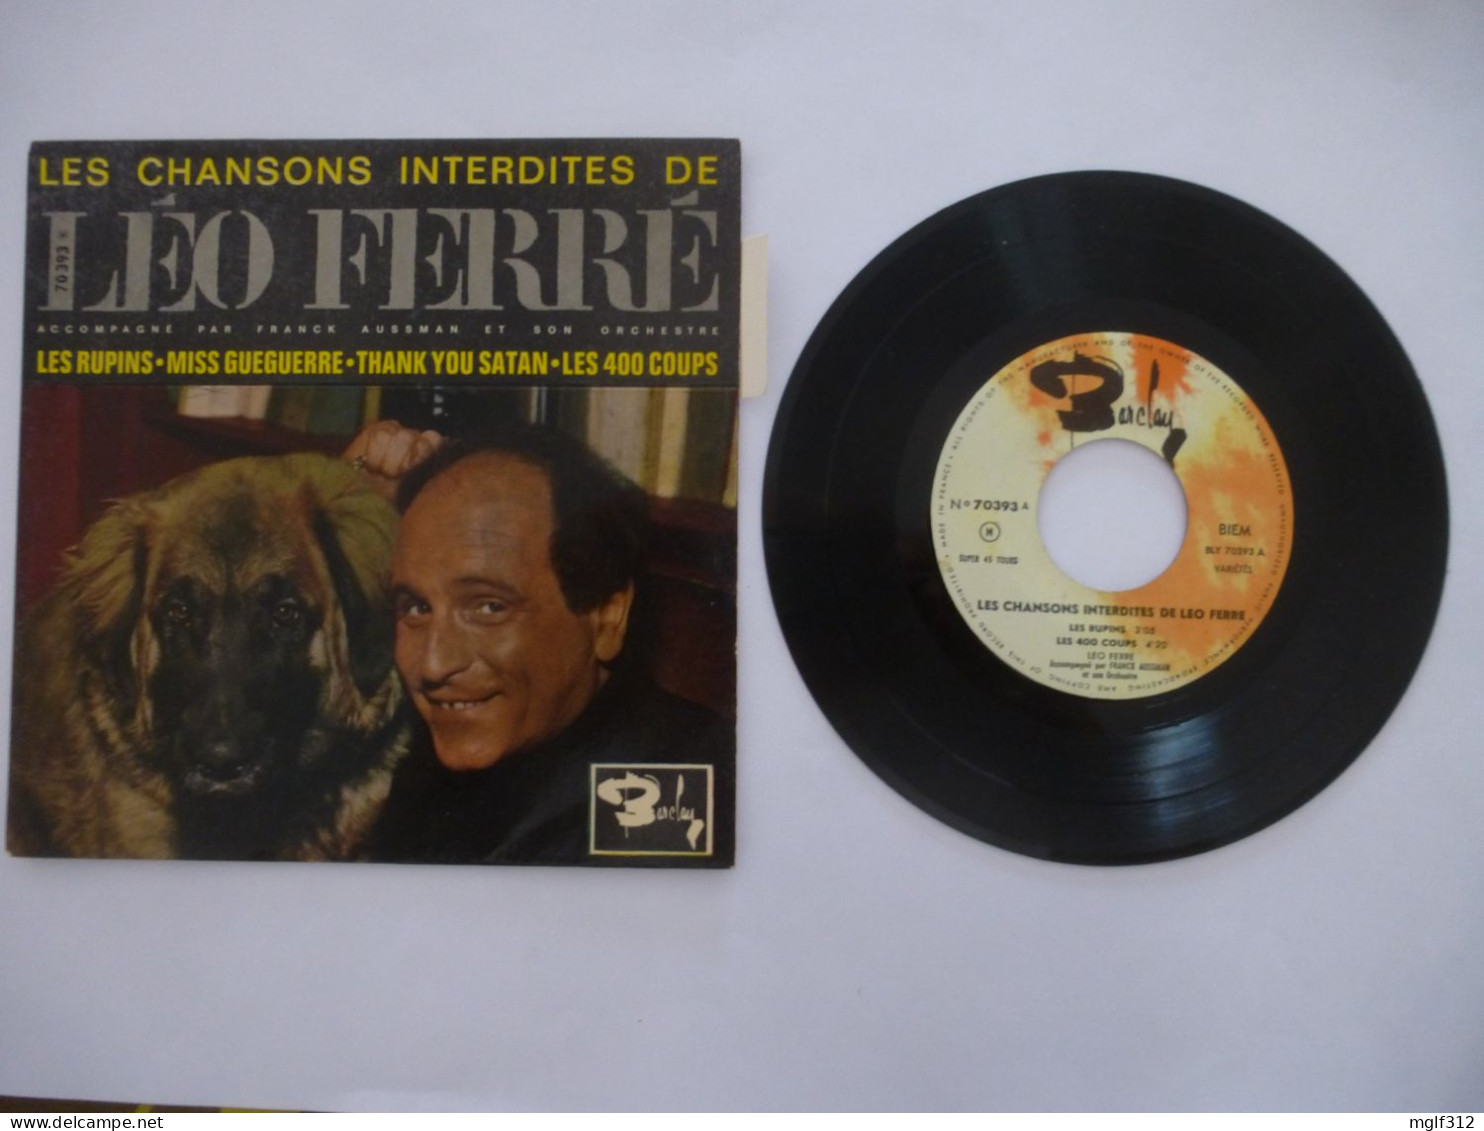 LEO FERRE - Lot : un LIVRE 1962 , un vinyle EP LES CHANSONS INTERDITES 1963, des articles de presse de 1993 à 2003.